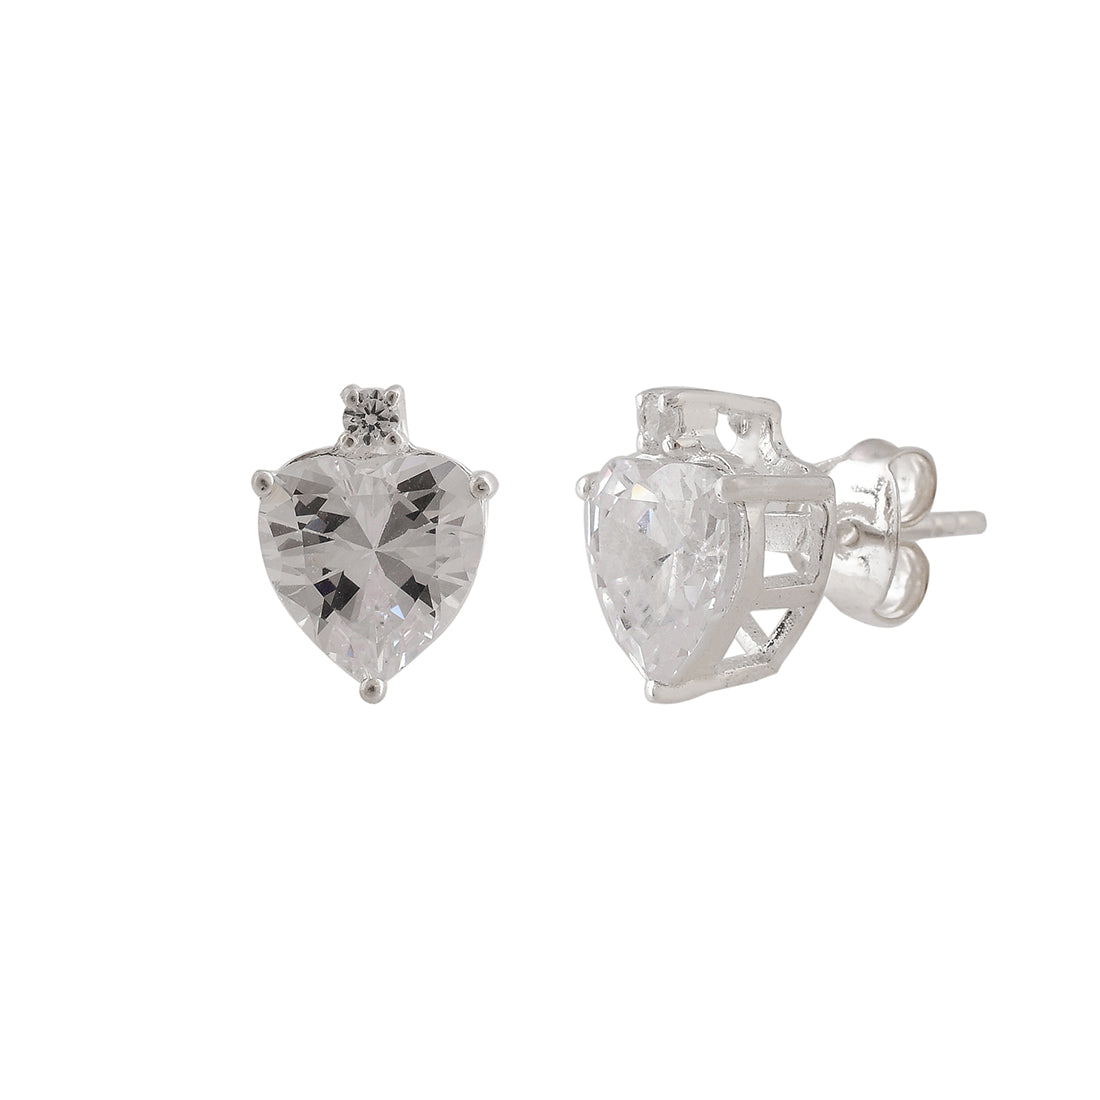 Women's Heart-Shape Beautiful 925 Sterling Silver Earrings - Voylla